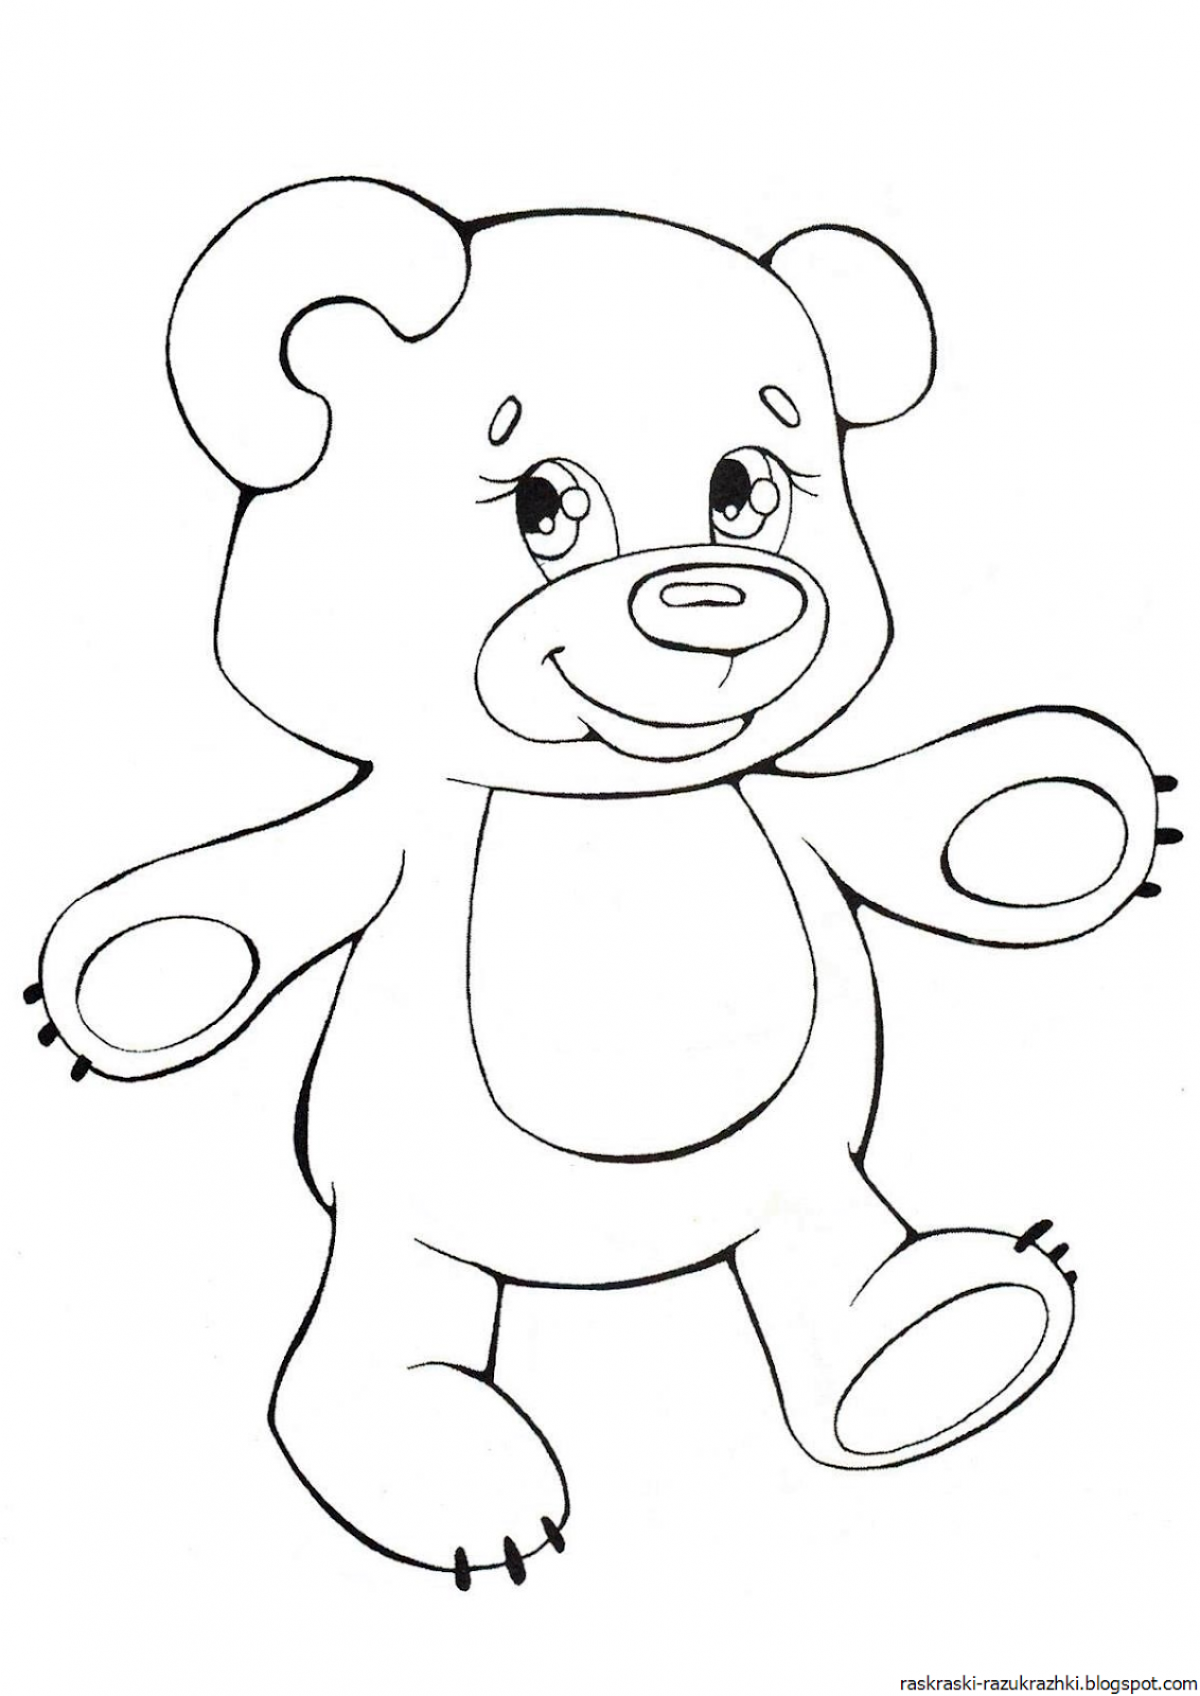 Распечатка медведя. Раскраска. Медвежонок. Медвежонок раскраска для детей. Раскраска "мишки". Медведь раскраска для детей.